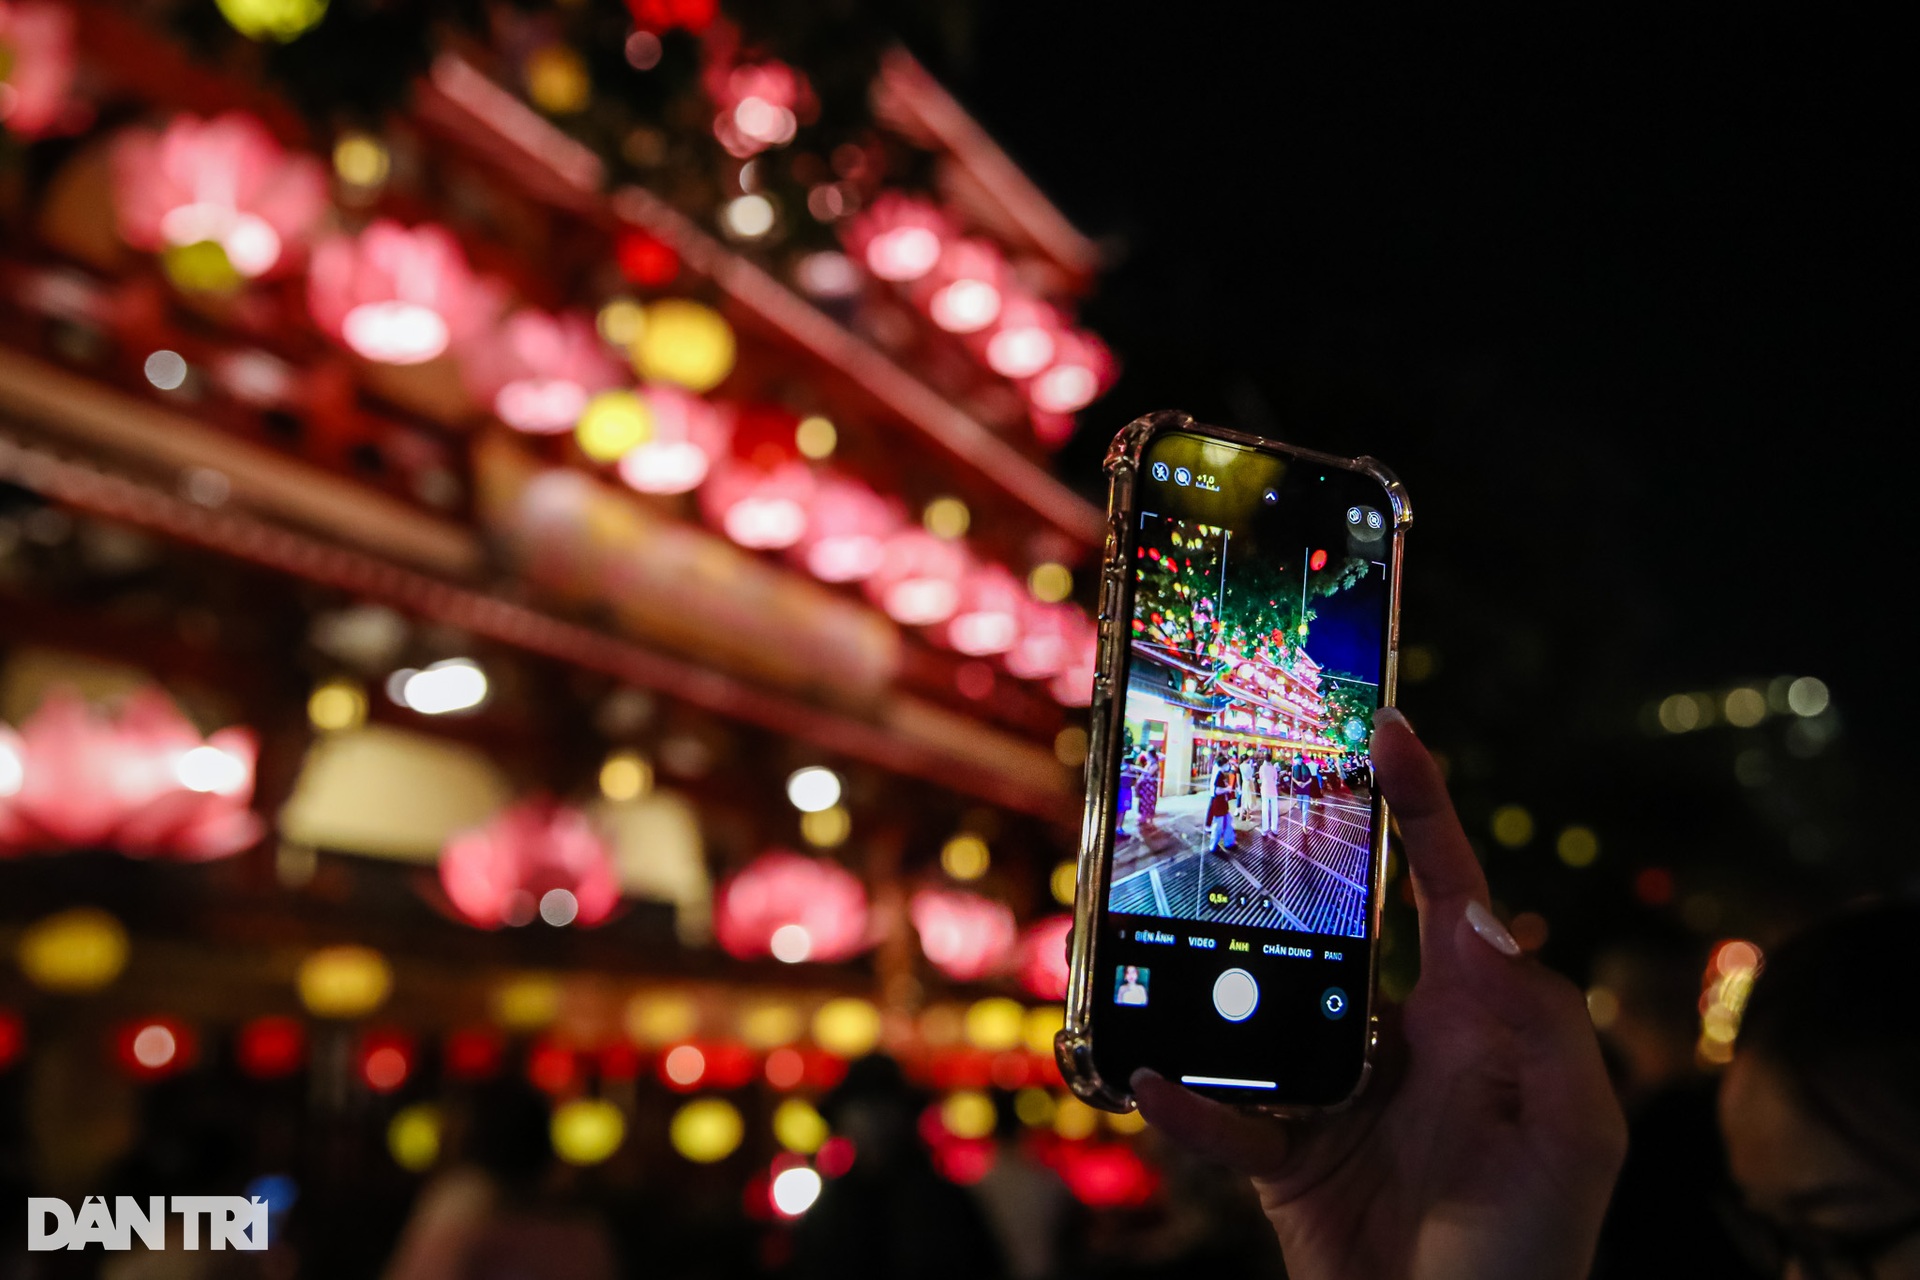 Ngôi chùa trang trí hơn 1.500 lồng đèn thu hút người dân ở TP.HCM - Ảnh 3.